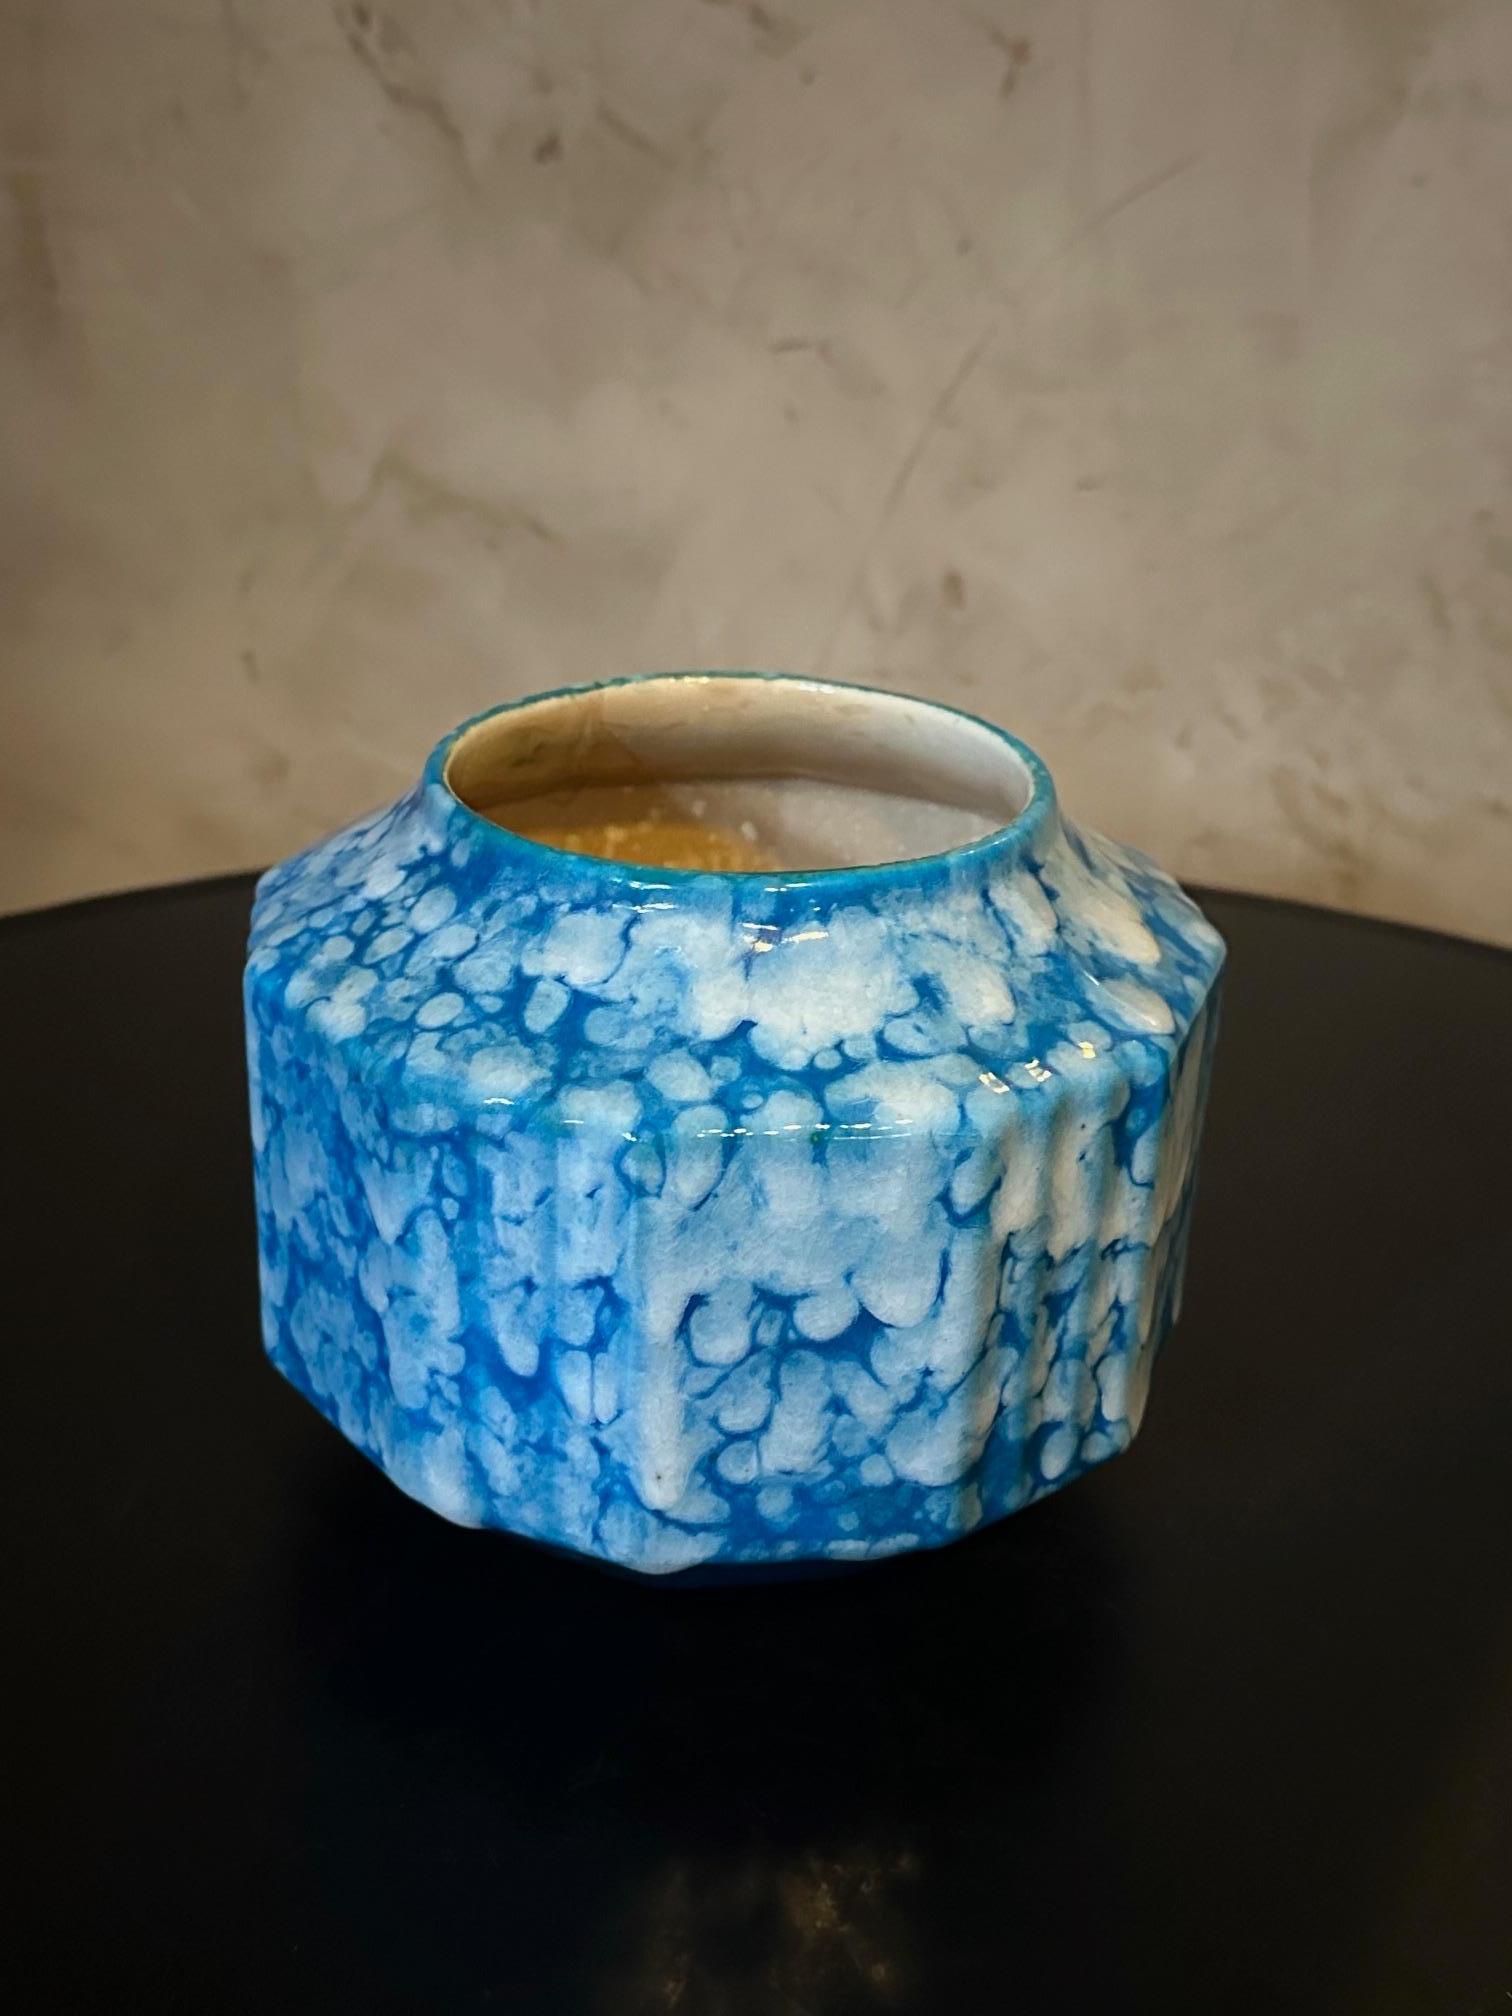 Sehr schöne Art Deco Vase signiert Boch la Louviere in gesprenkeltem blauem Steingut.
Sehr guter Zustand. 